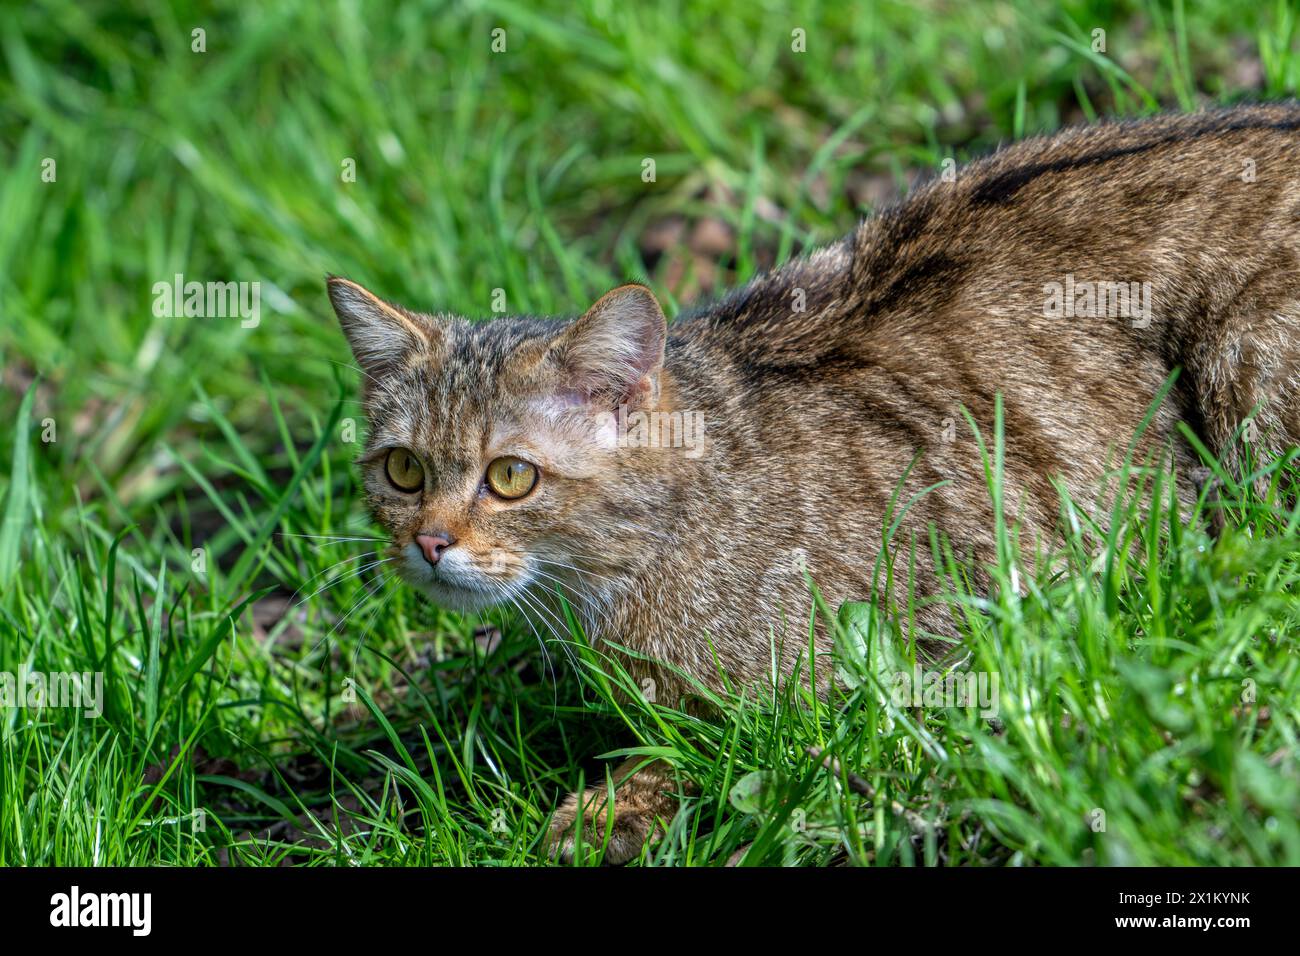 Chat sauvage européen / chat sauvage (Felis silvestris silvestris) chasse des proies dans les prairies / prairies Banque D'Images